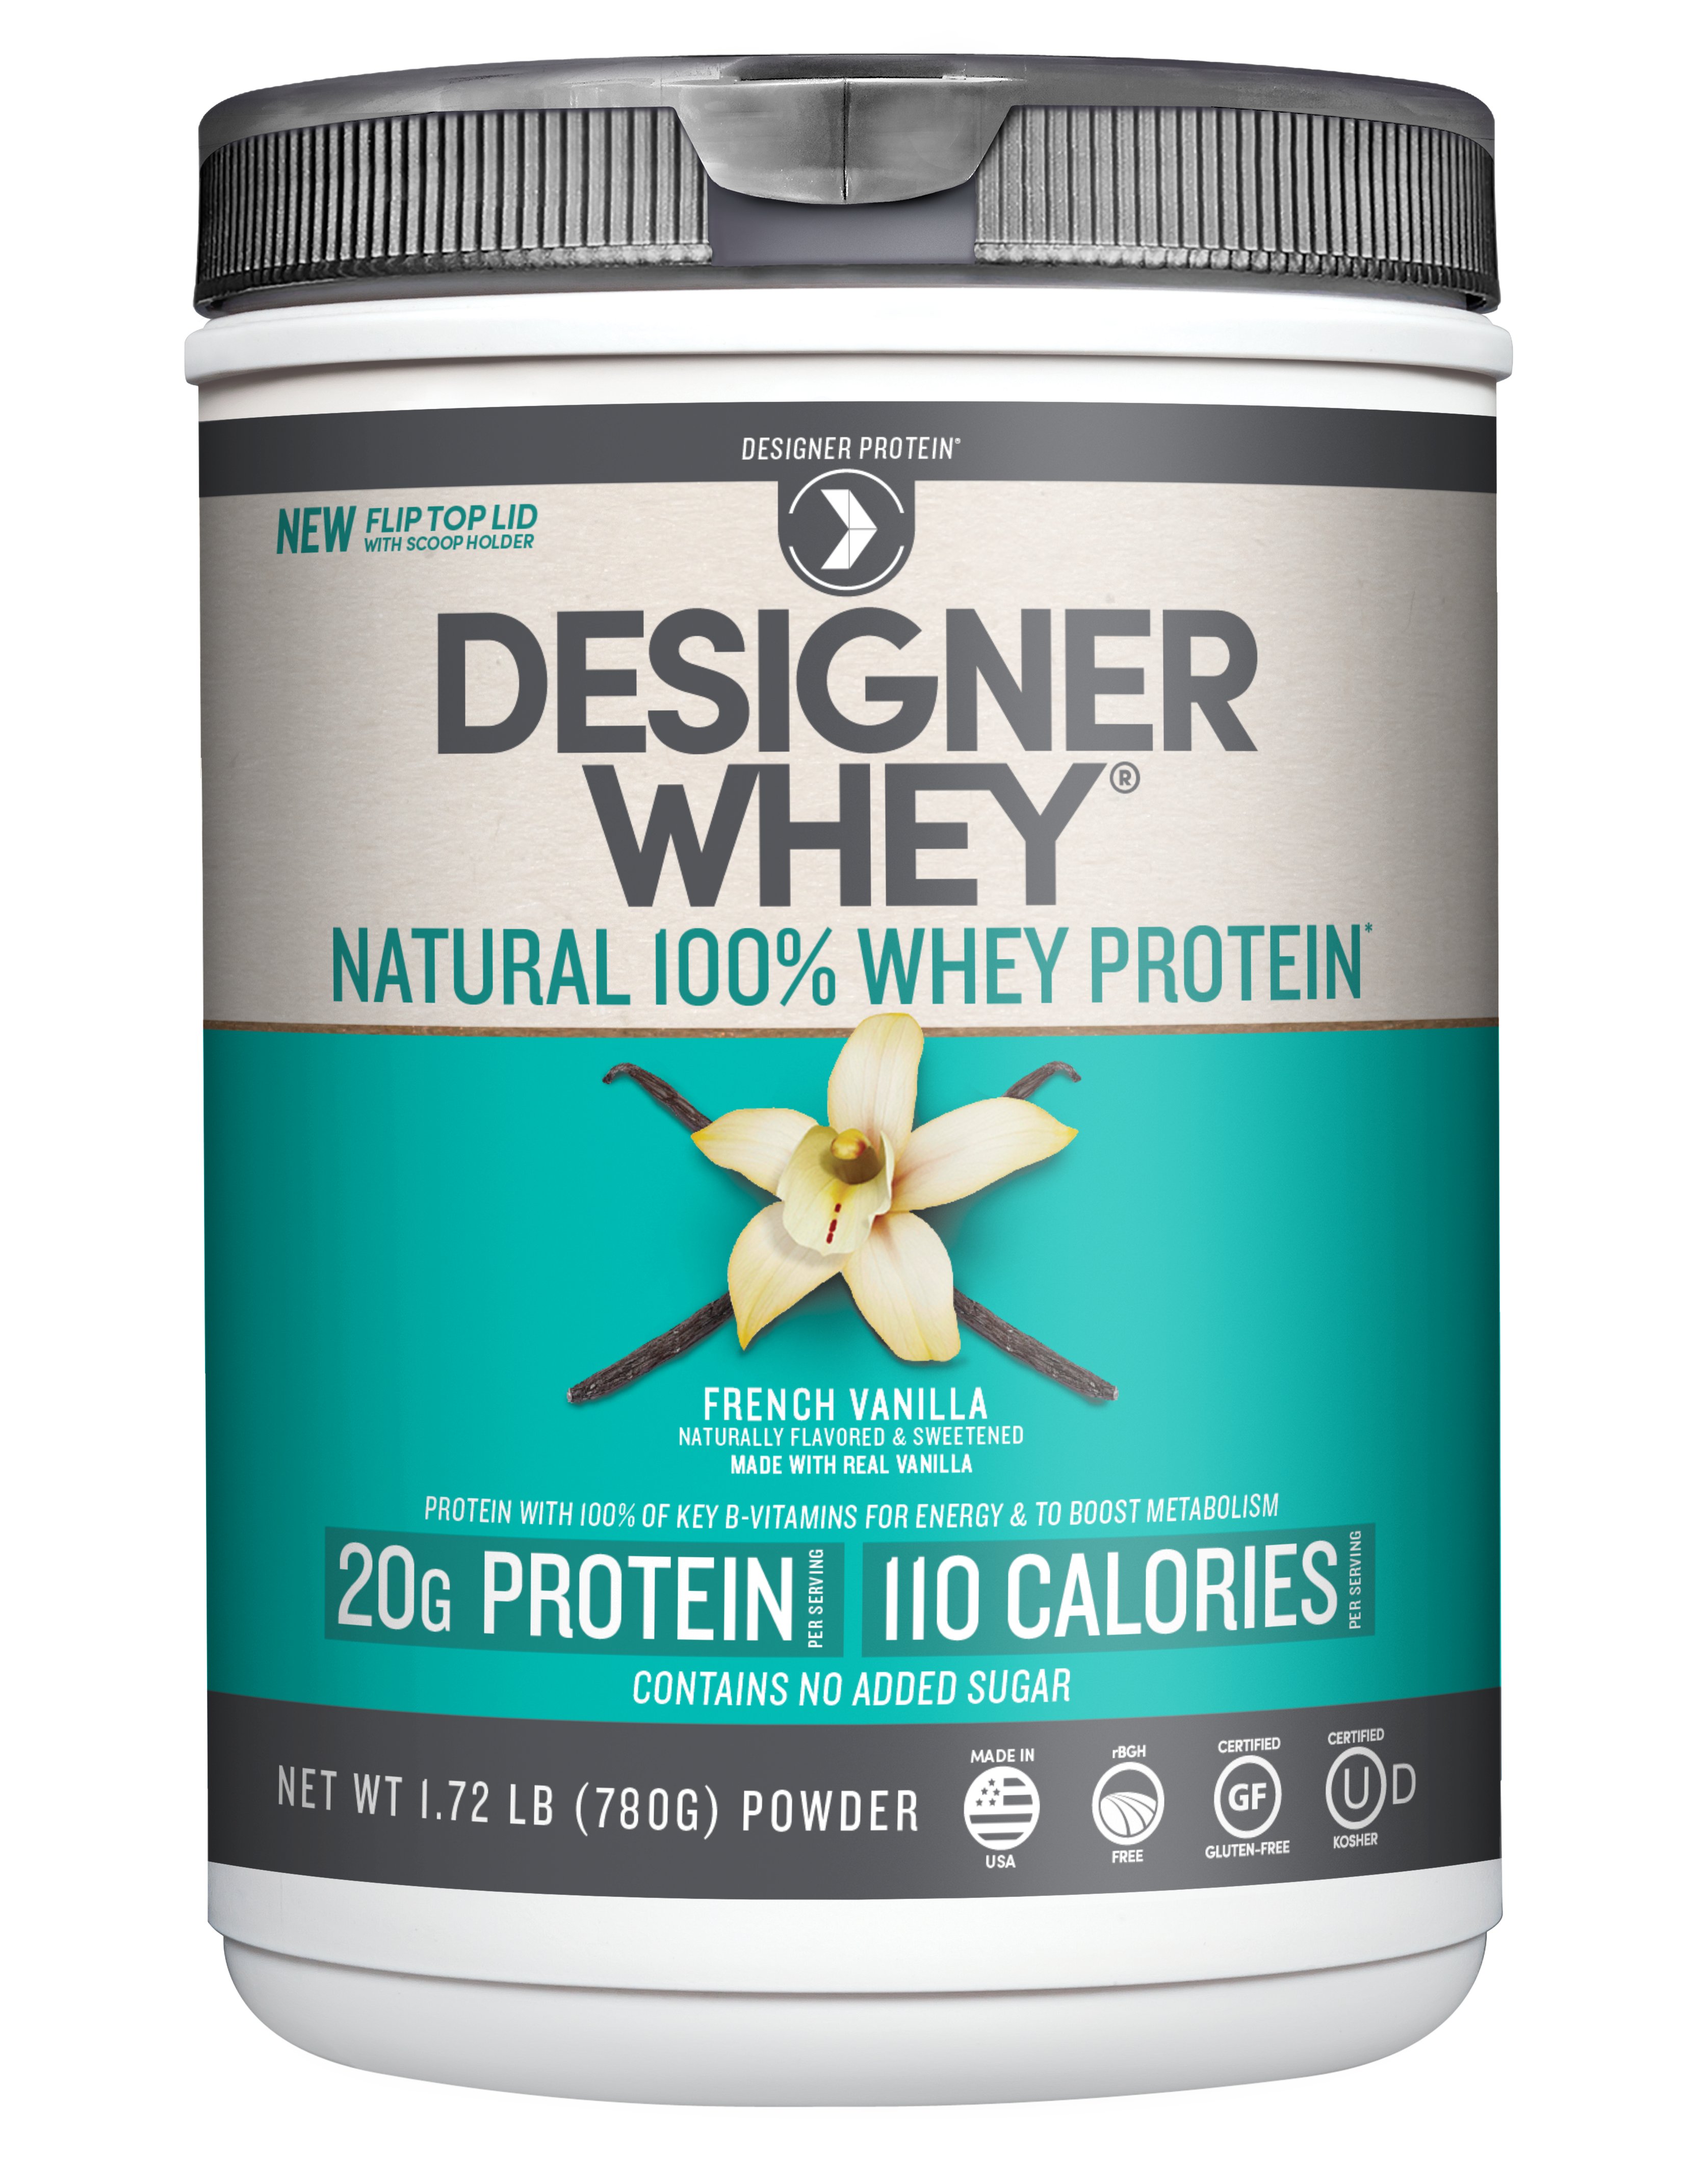 Designer Whey Natural 100% Whey Protein - French Vanilla - Shop Diet